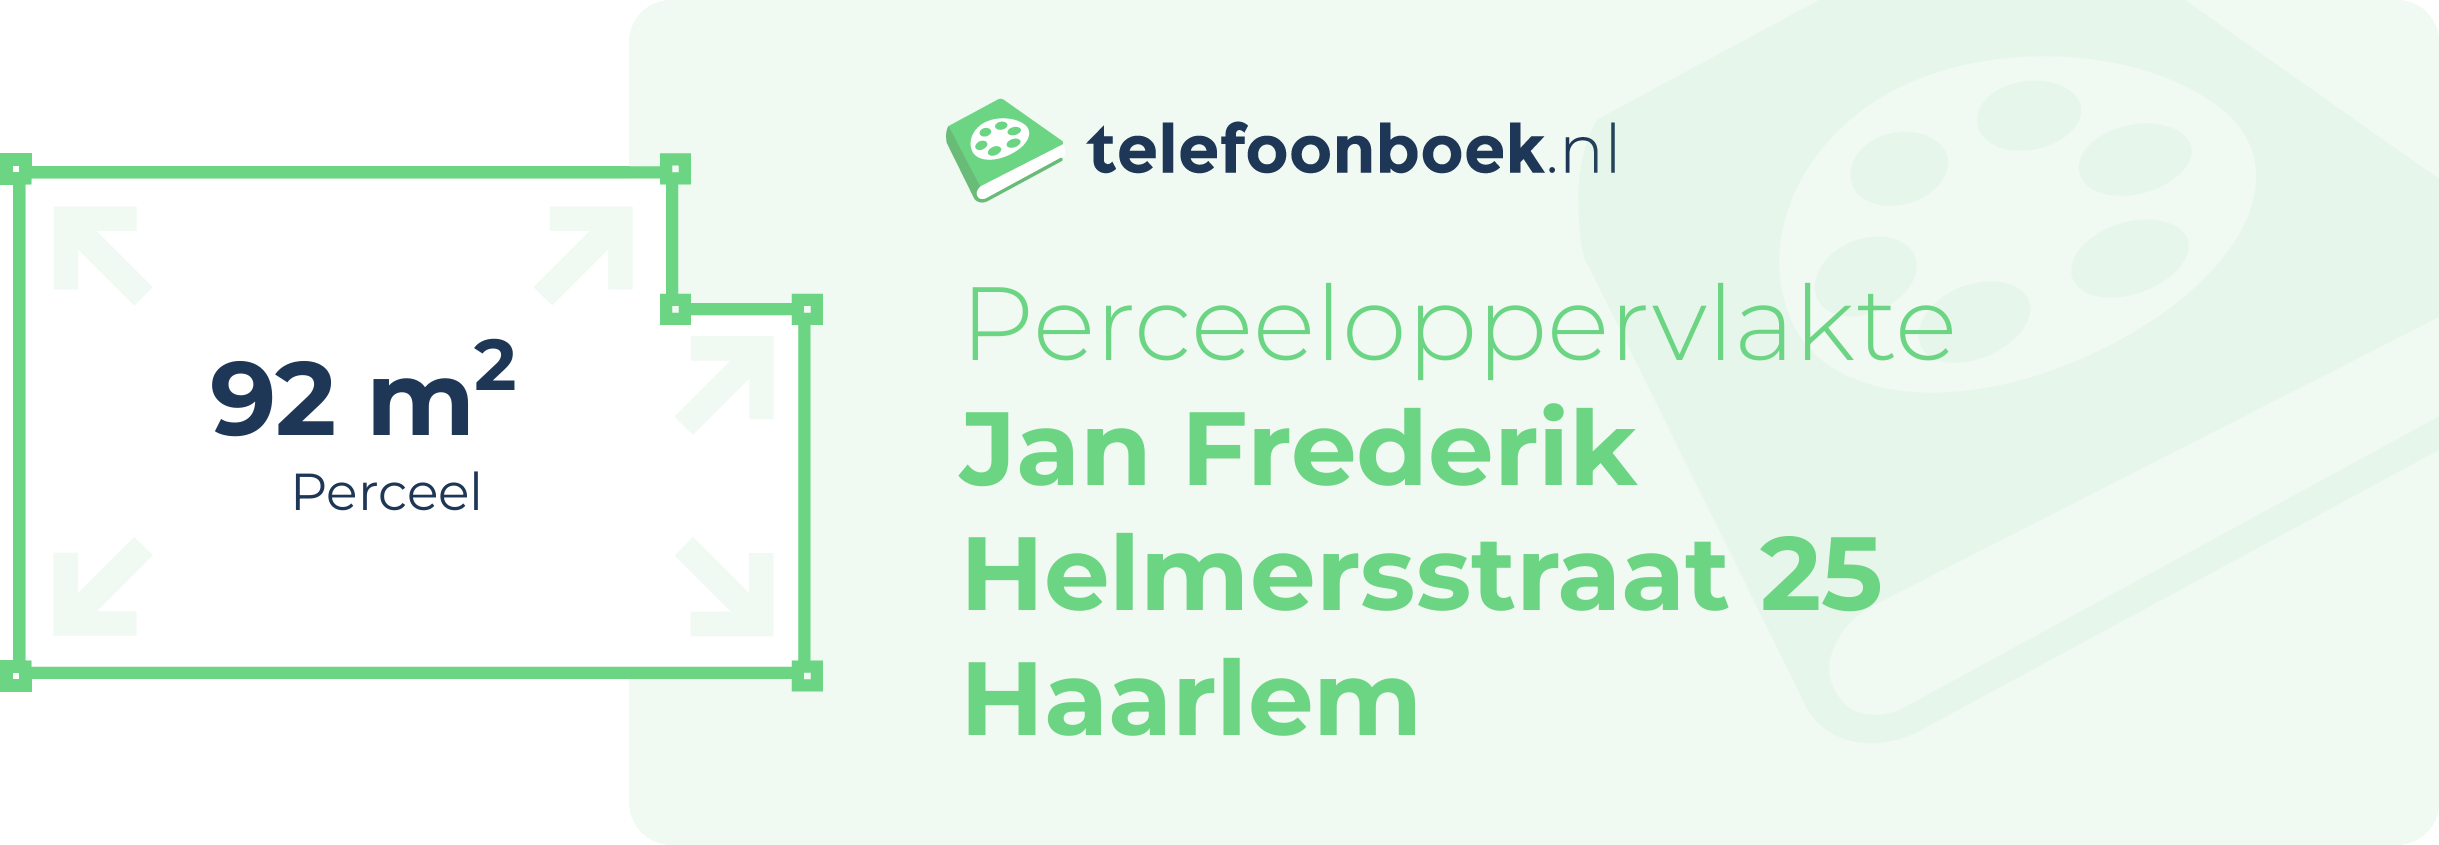 Perceeloppervlakte Jan Frederik Helmersstraat 25 Haarlem